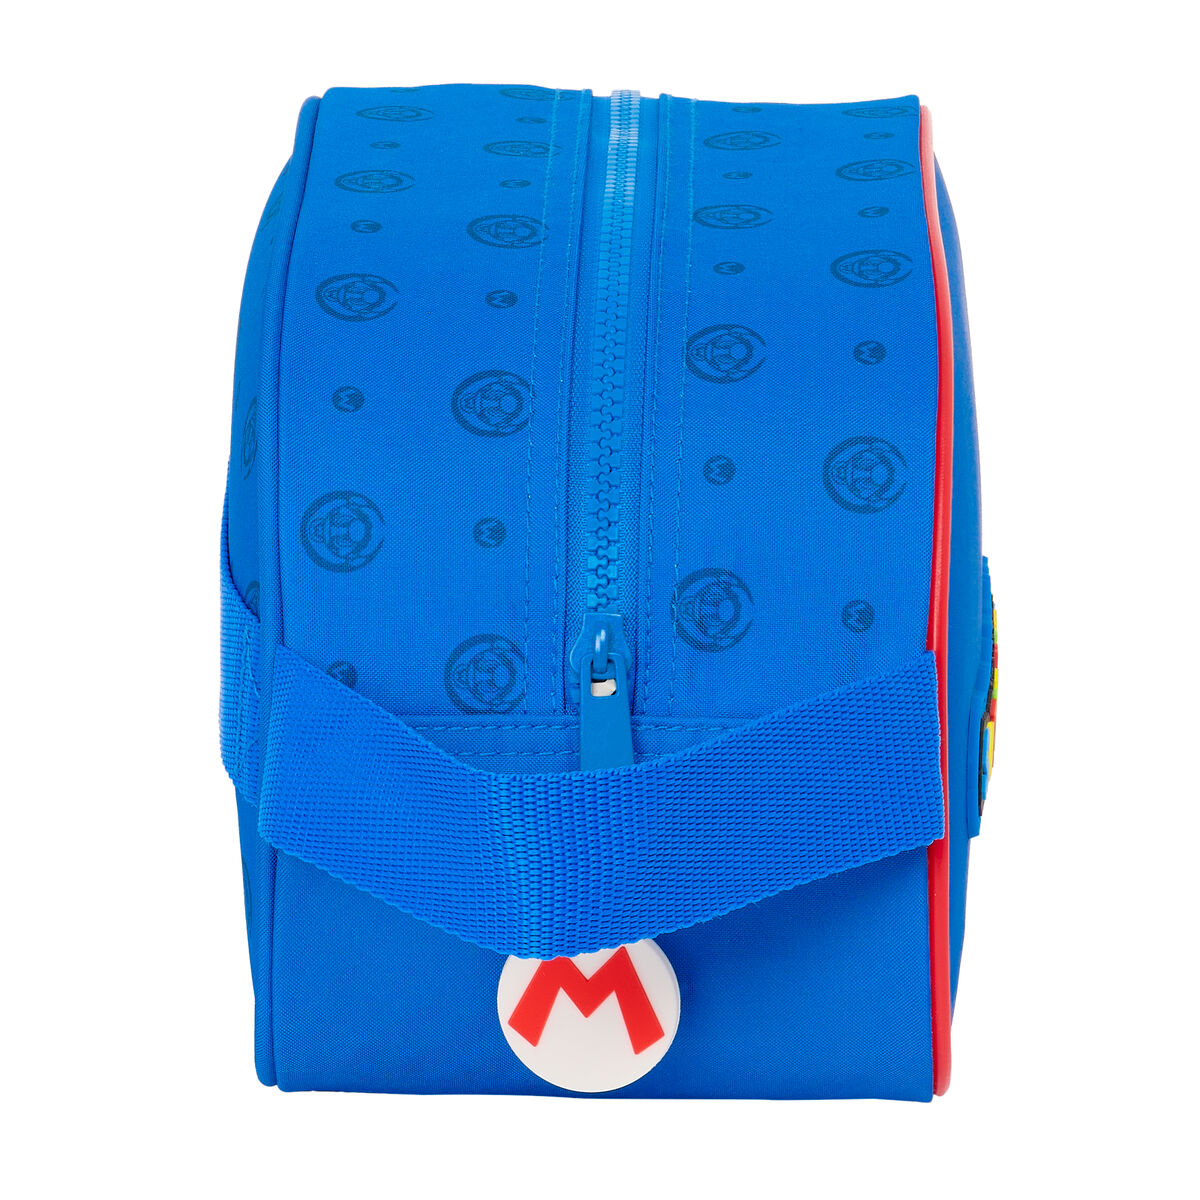 Nécessaire Escolar Super Mario Play Azul Vermelho 26 X 15 X 12 Cm